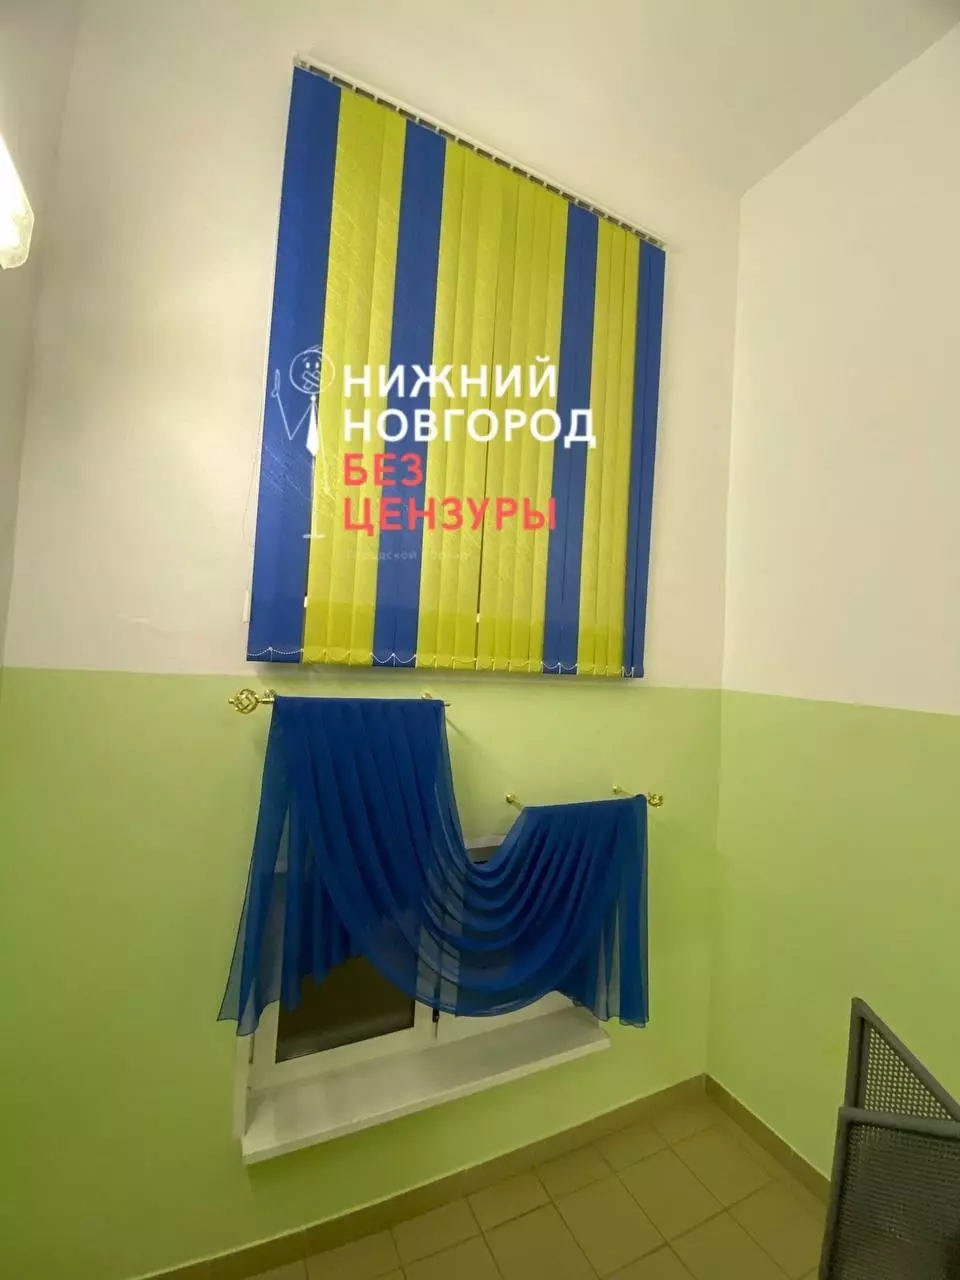 Желто-синие жалюзи повесили в детском саду Нижнего Новгорода